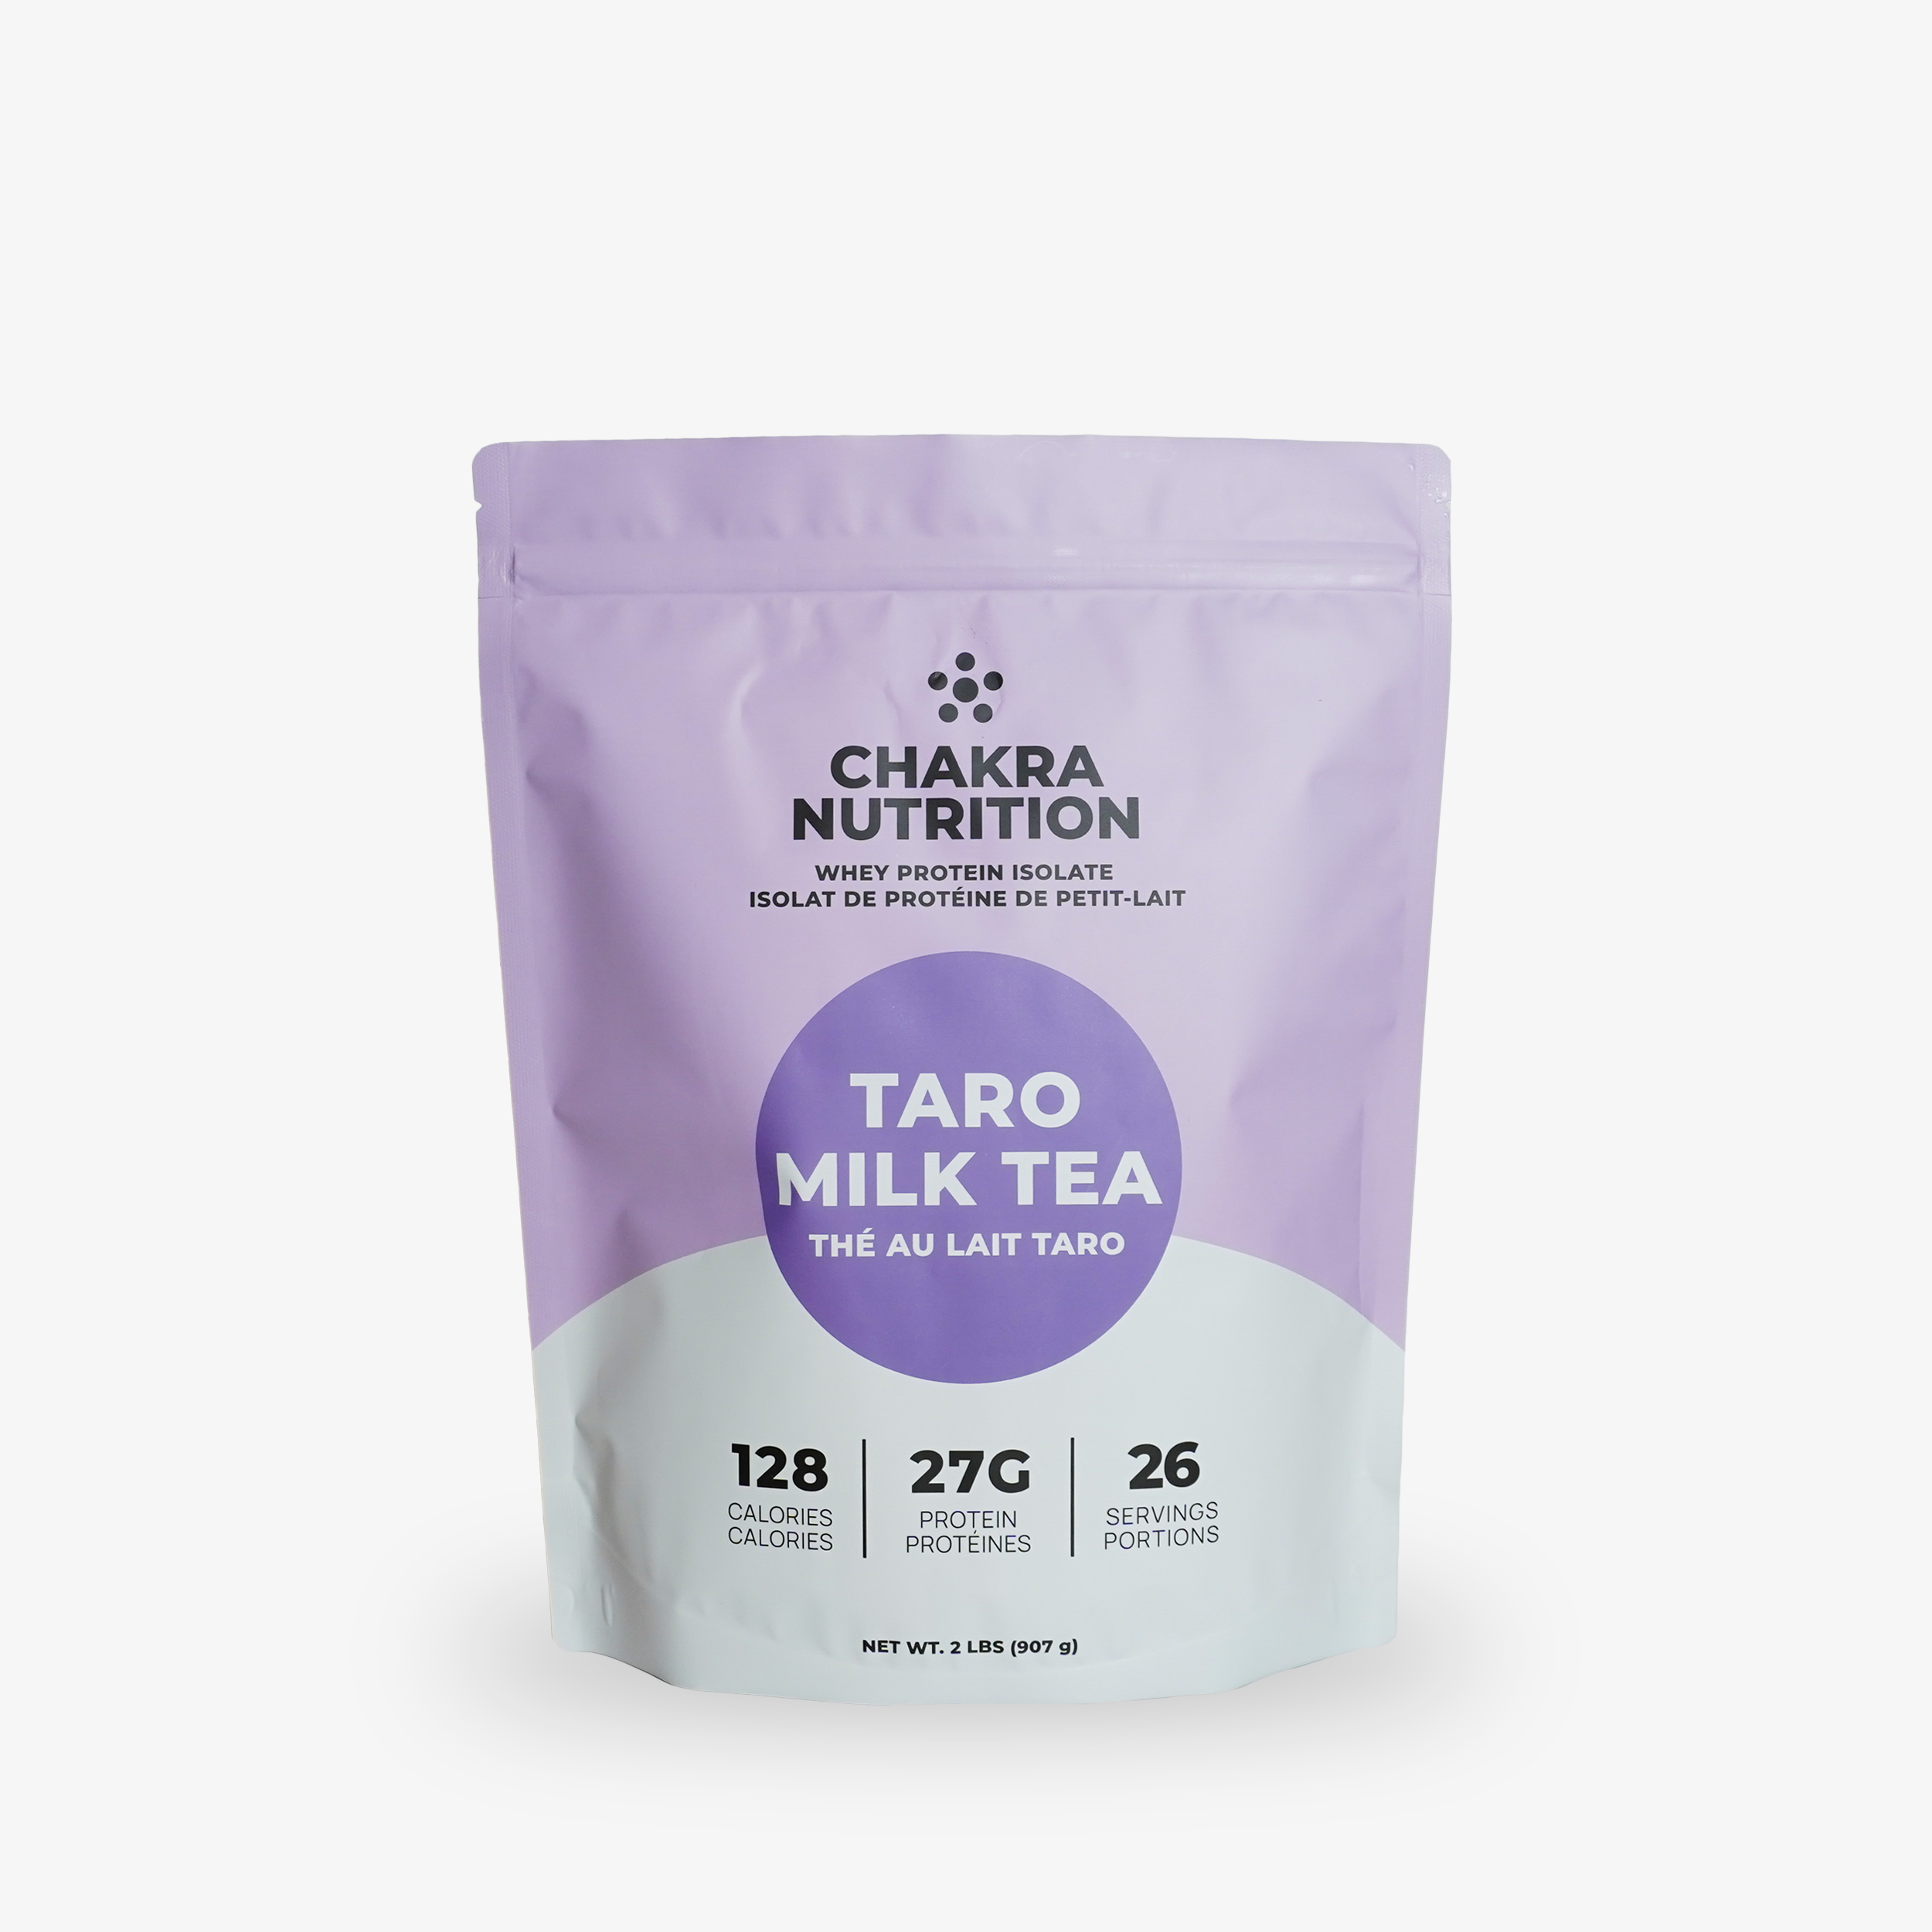 TARO MILK TEA PROTEIN POWDER